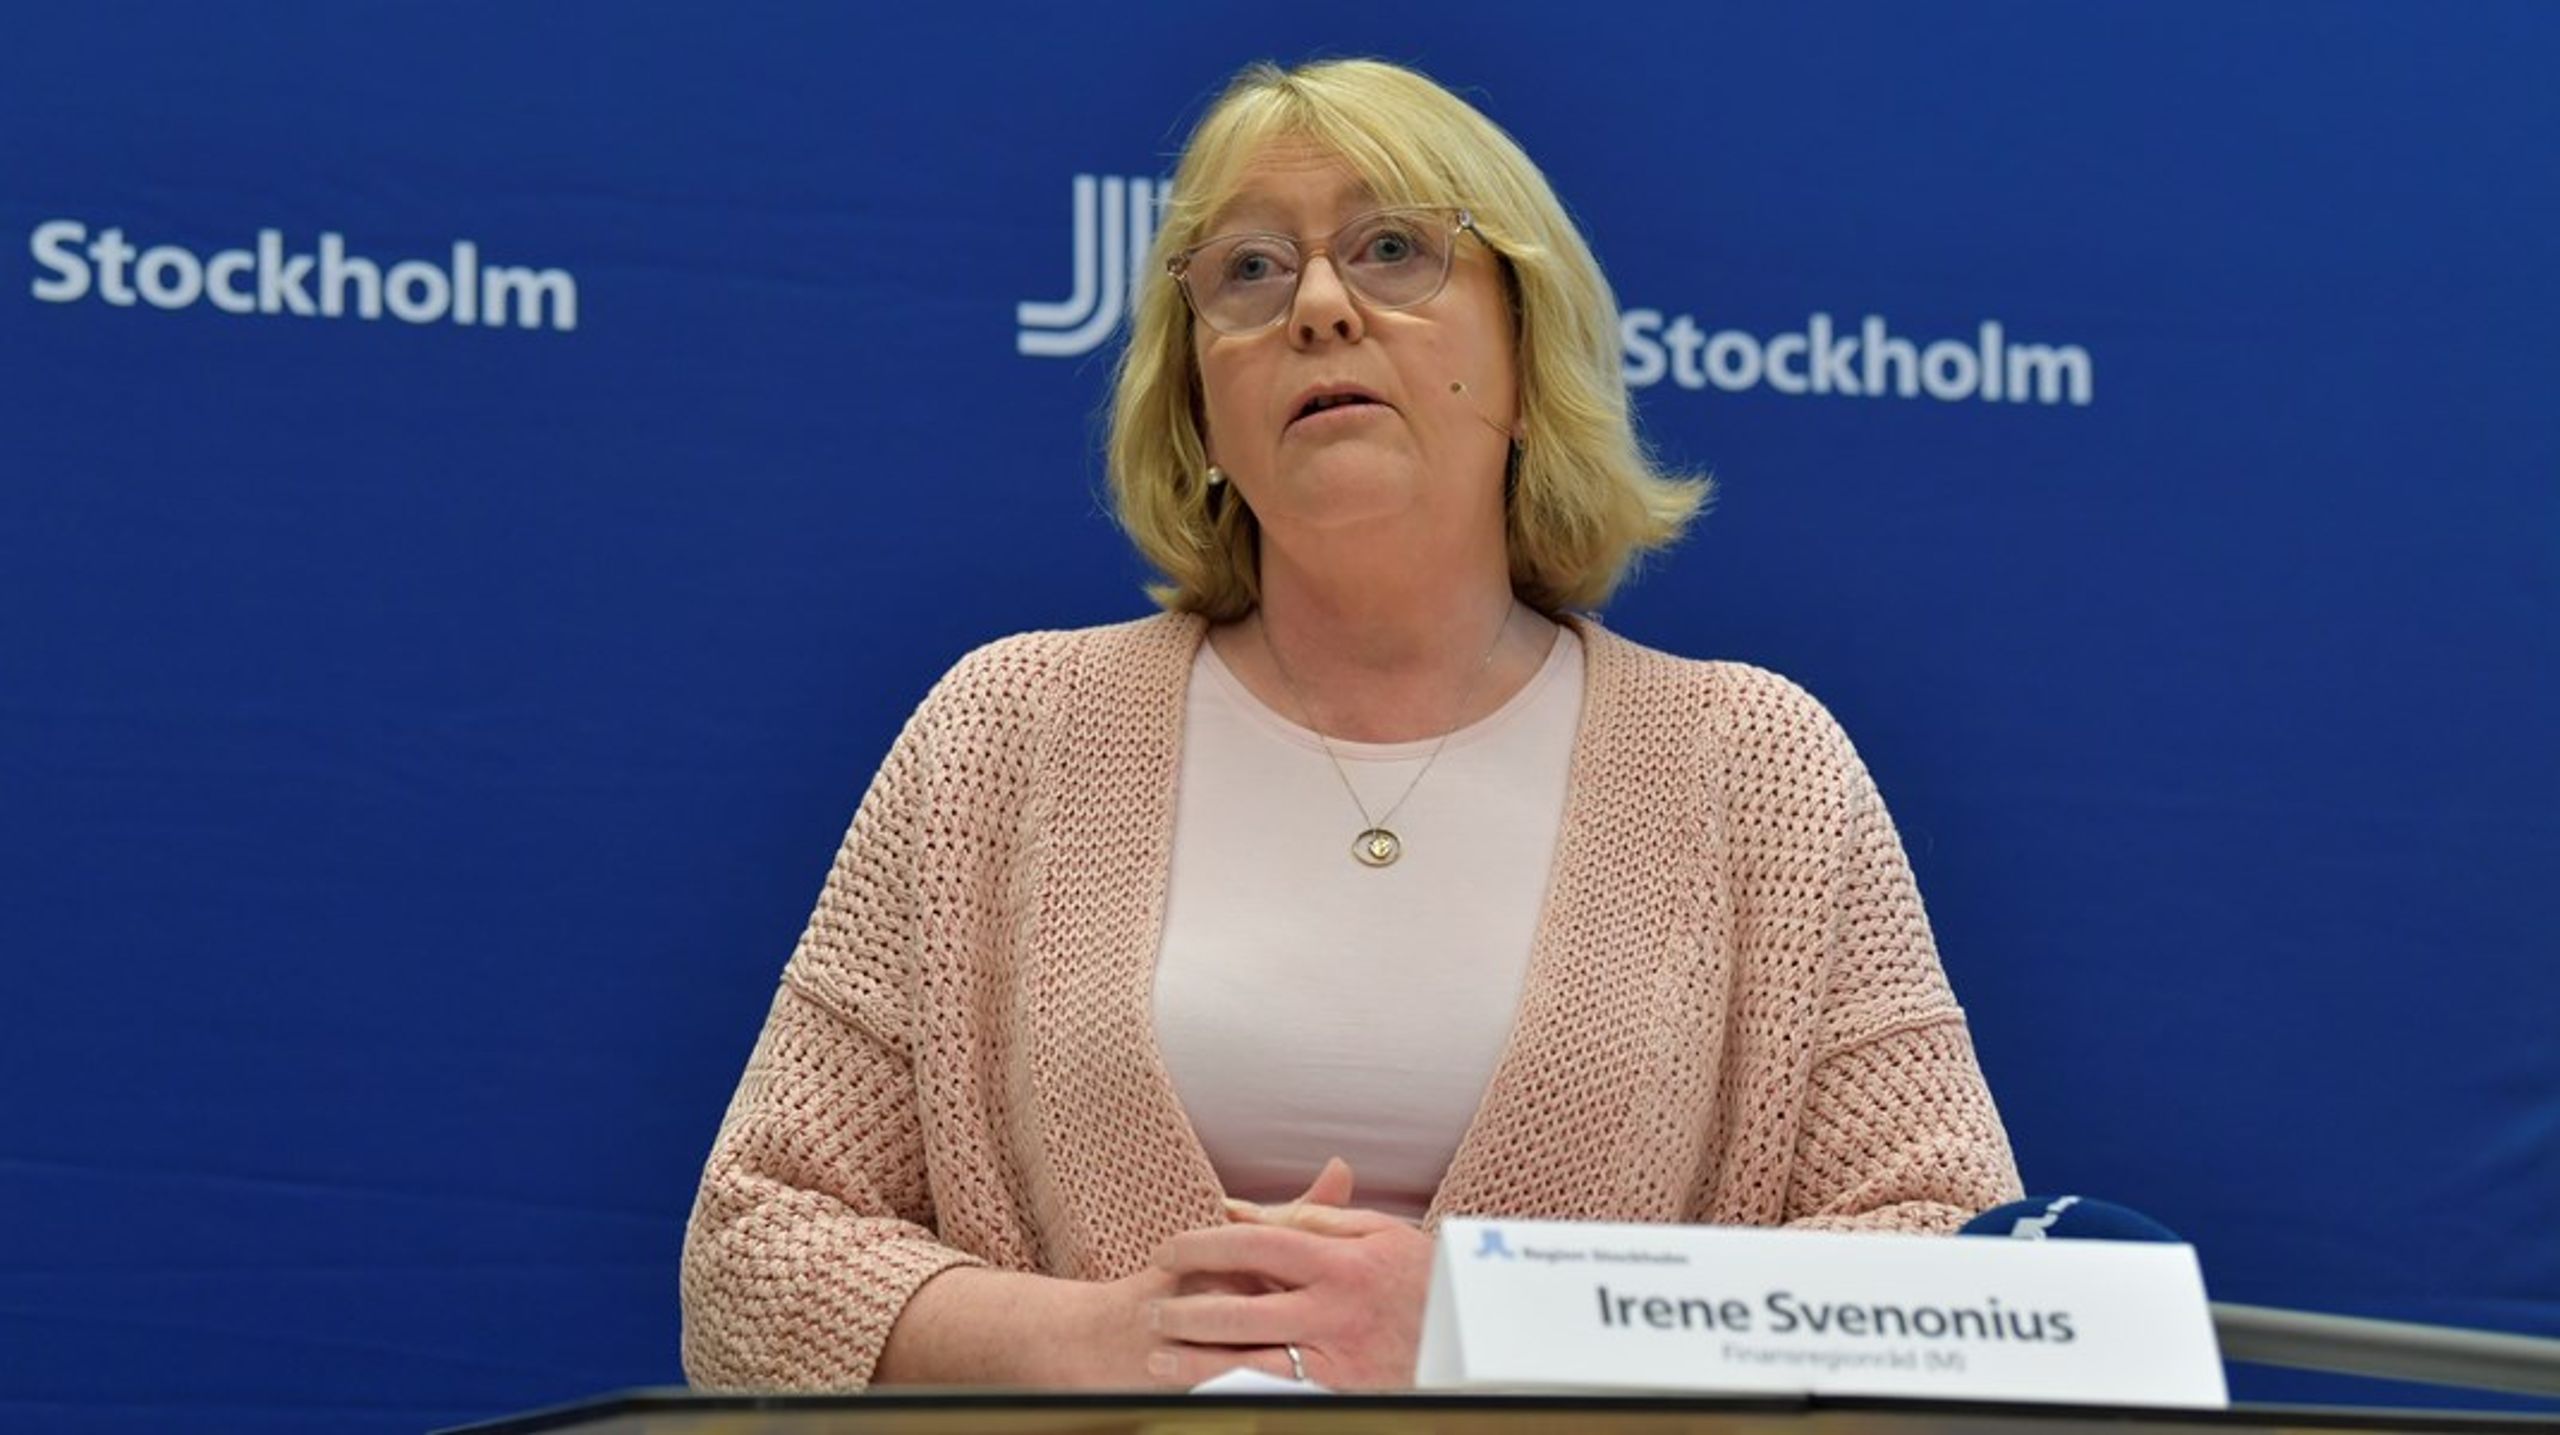 ”Så länge Moderaterna är med och styr i Region Stockholm kommer systemen aldrig sättas före människan”, skriver Irene Svenonius (M).